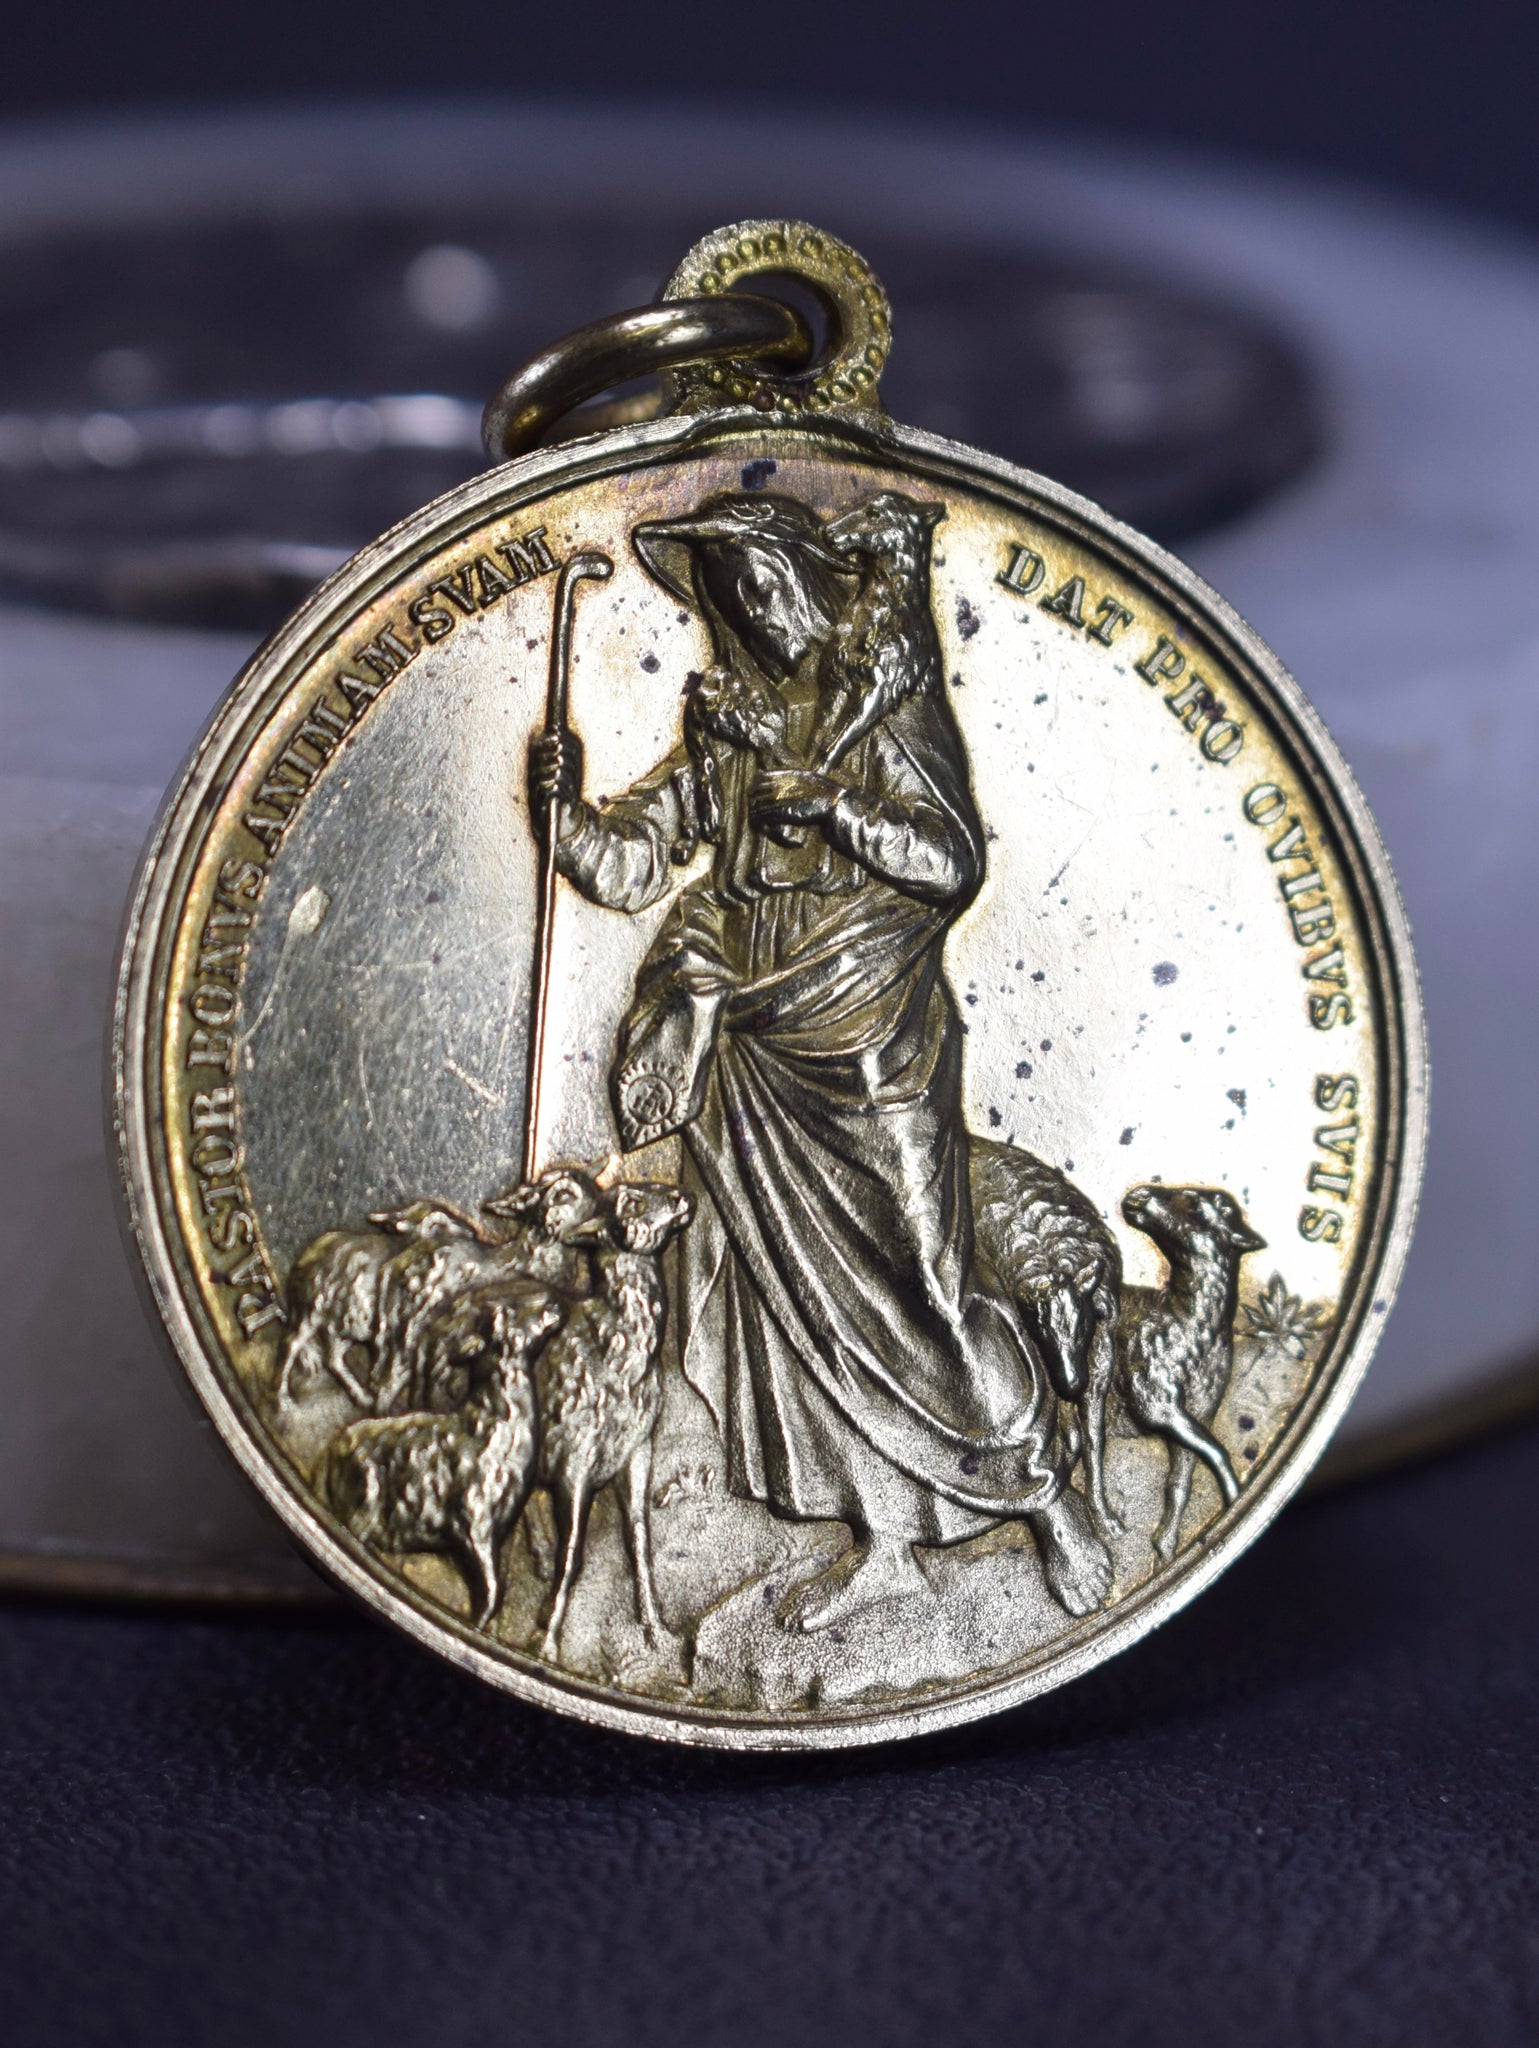 Good Shepherd Medal by Johnson